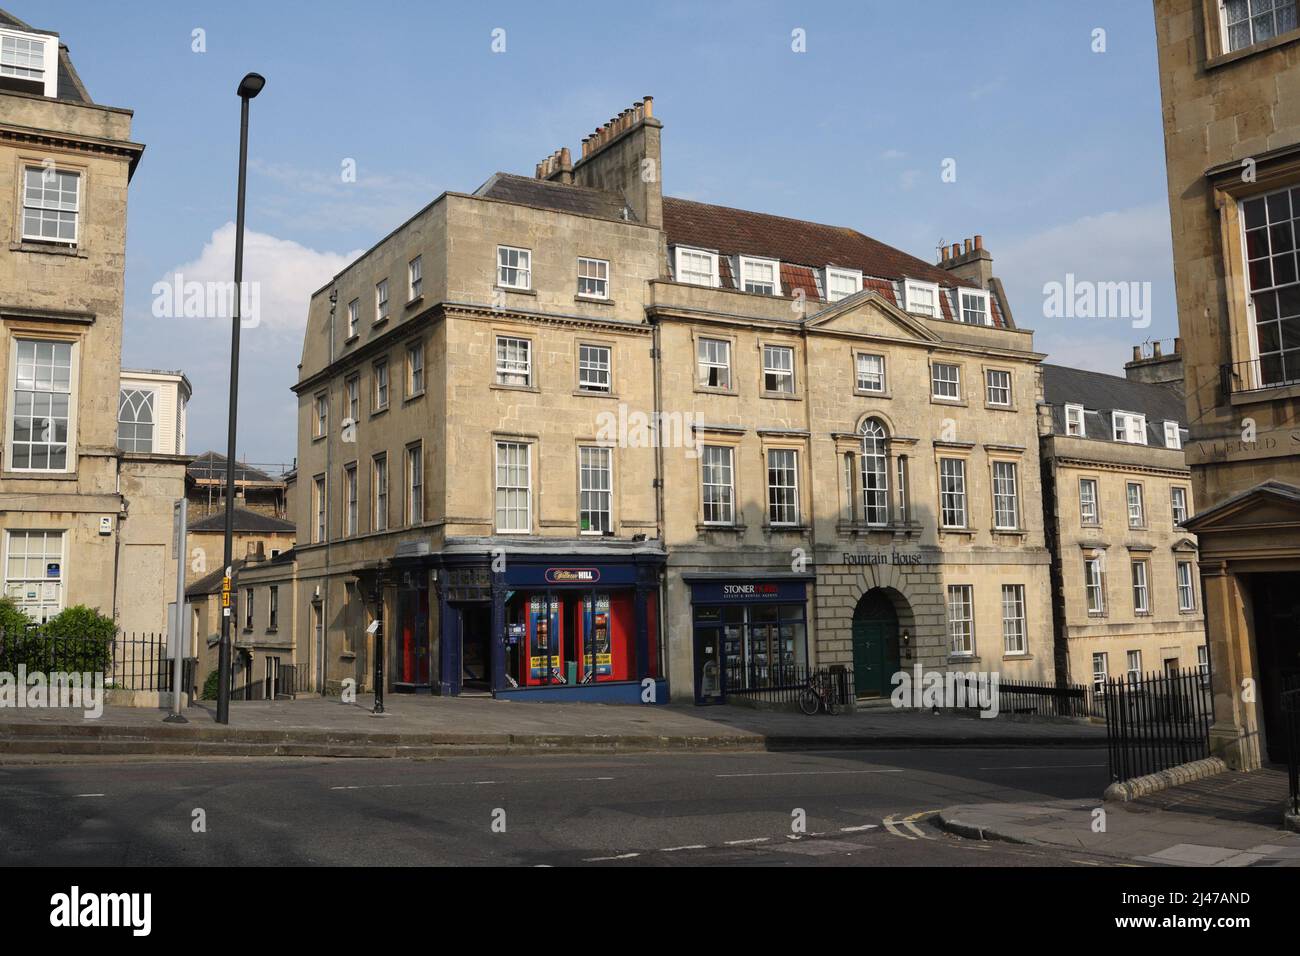 William Hill Bookmakers Shop, à l'angle de Lansdown Road et Hay Hill à Bath, en Angleterre. Propriétés de la période de l'architecture géorgienne. Bâtiments en pierre de bain Banque D'Images